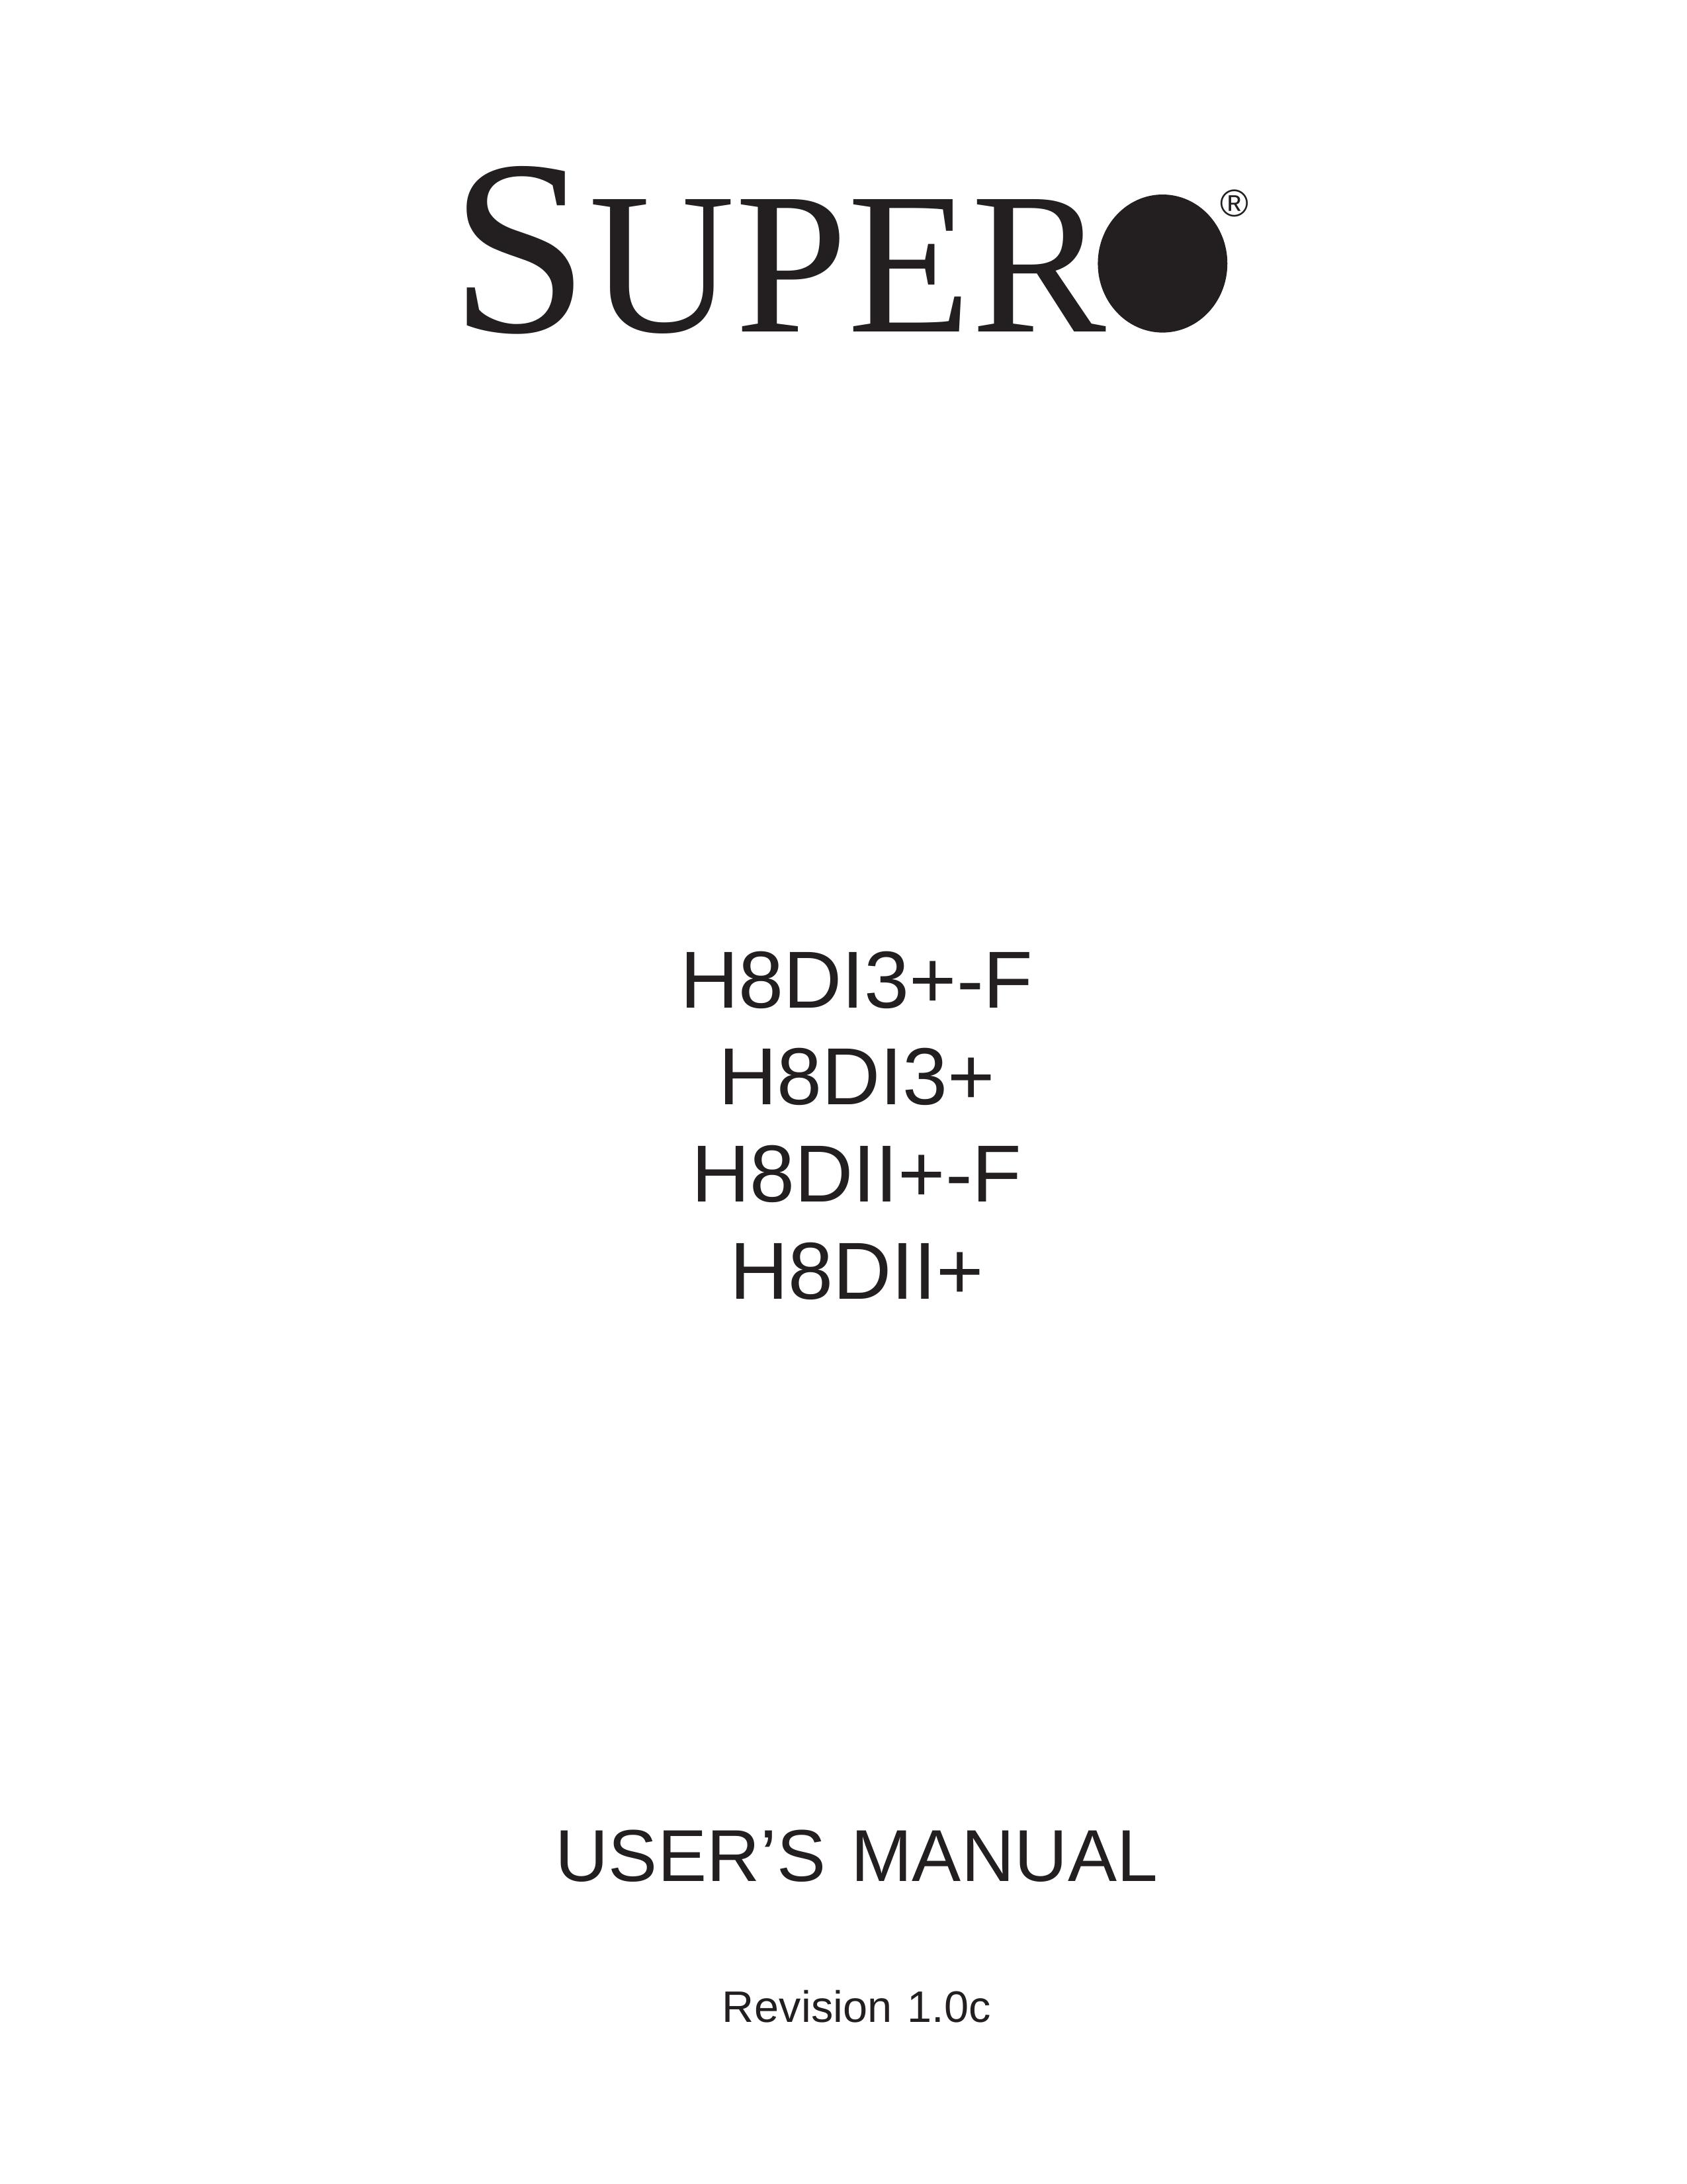 SUPER MICRO Computer H8DII+-F Security Camera User Manual